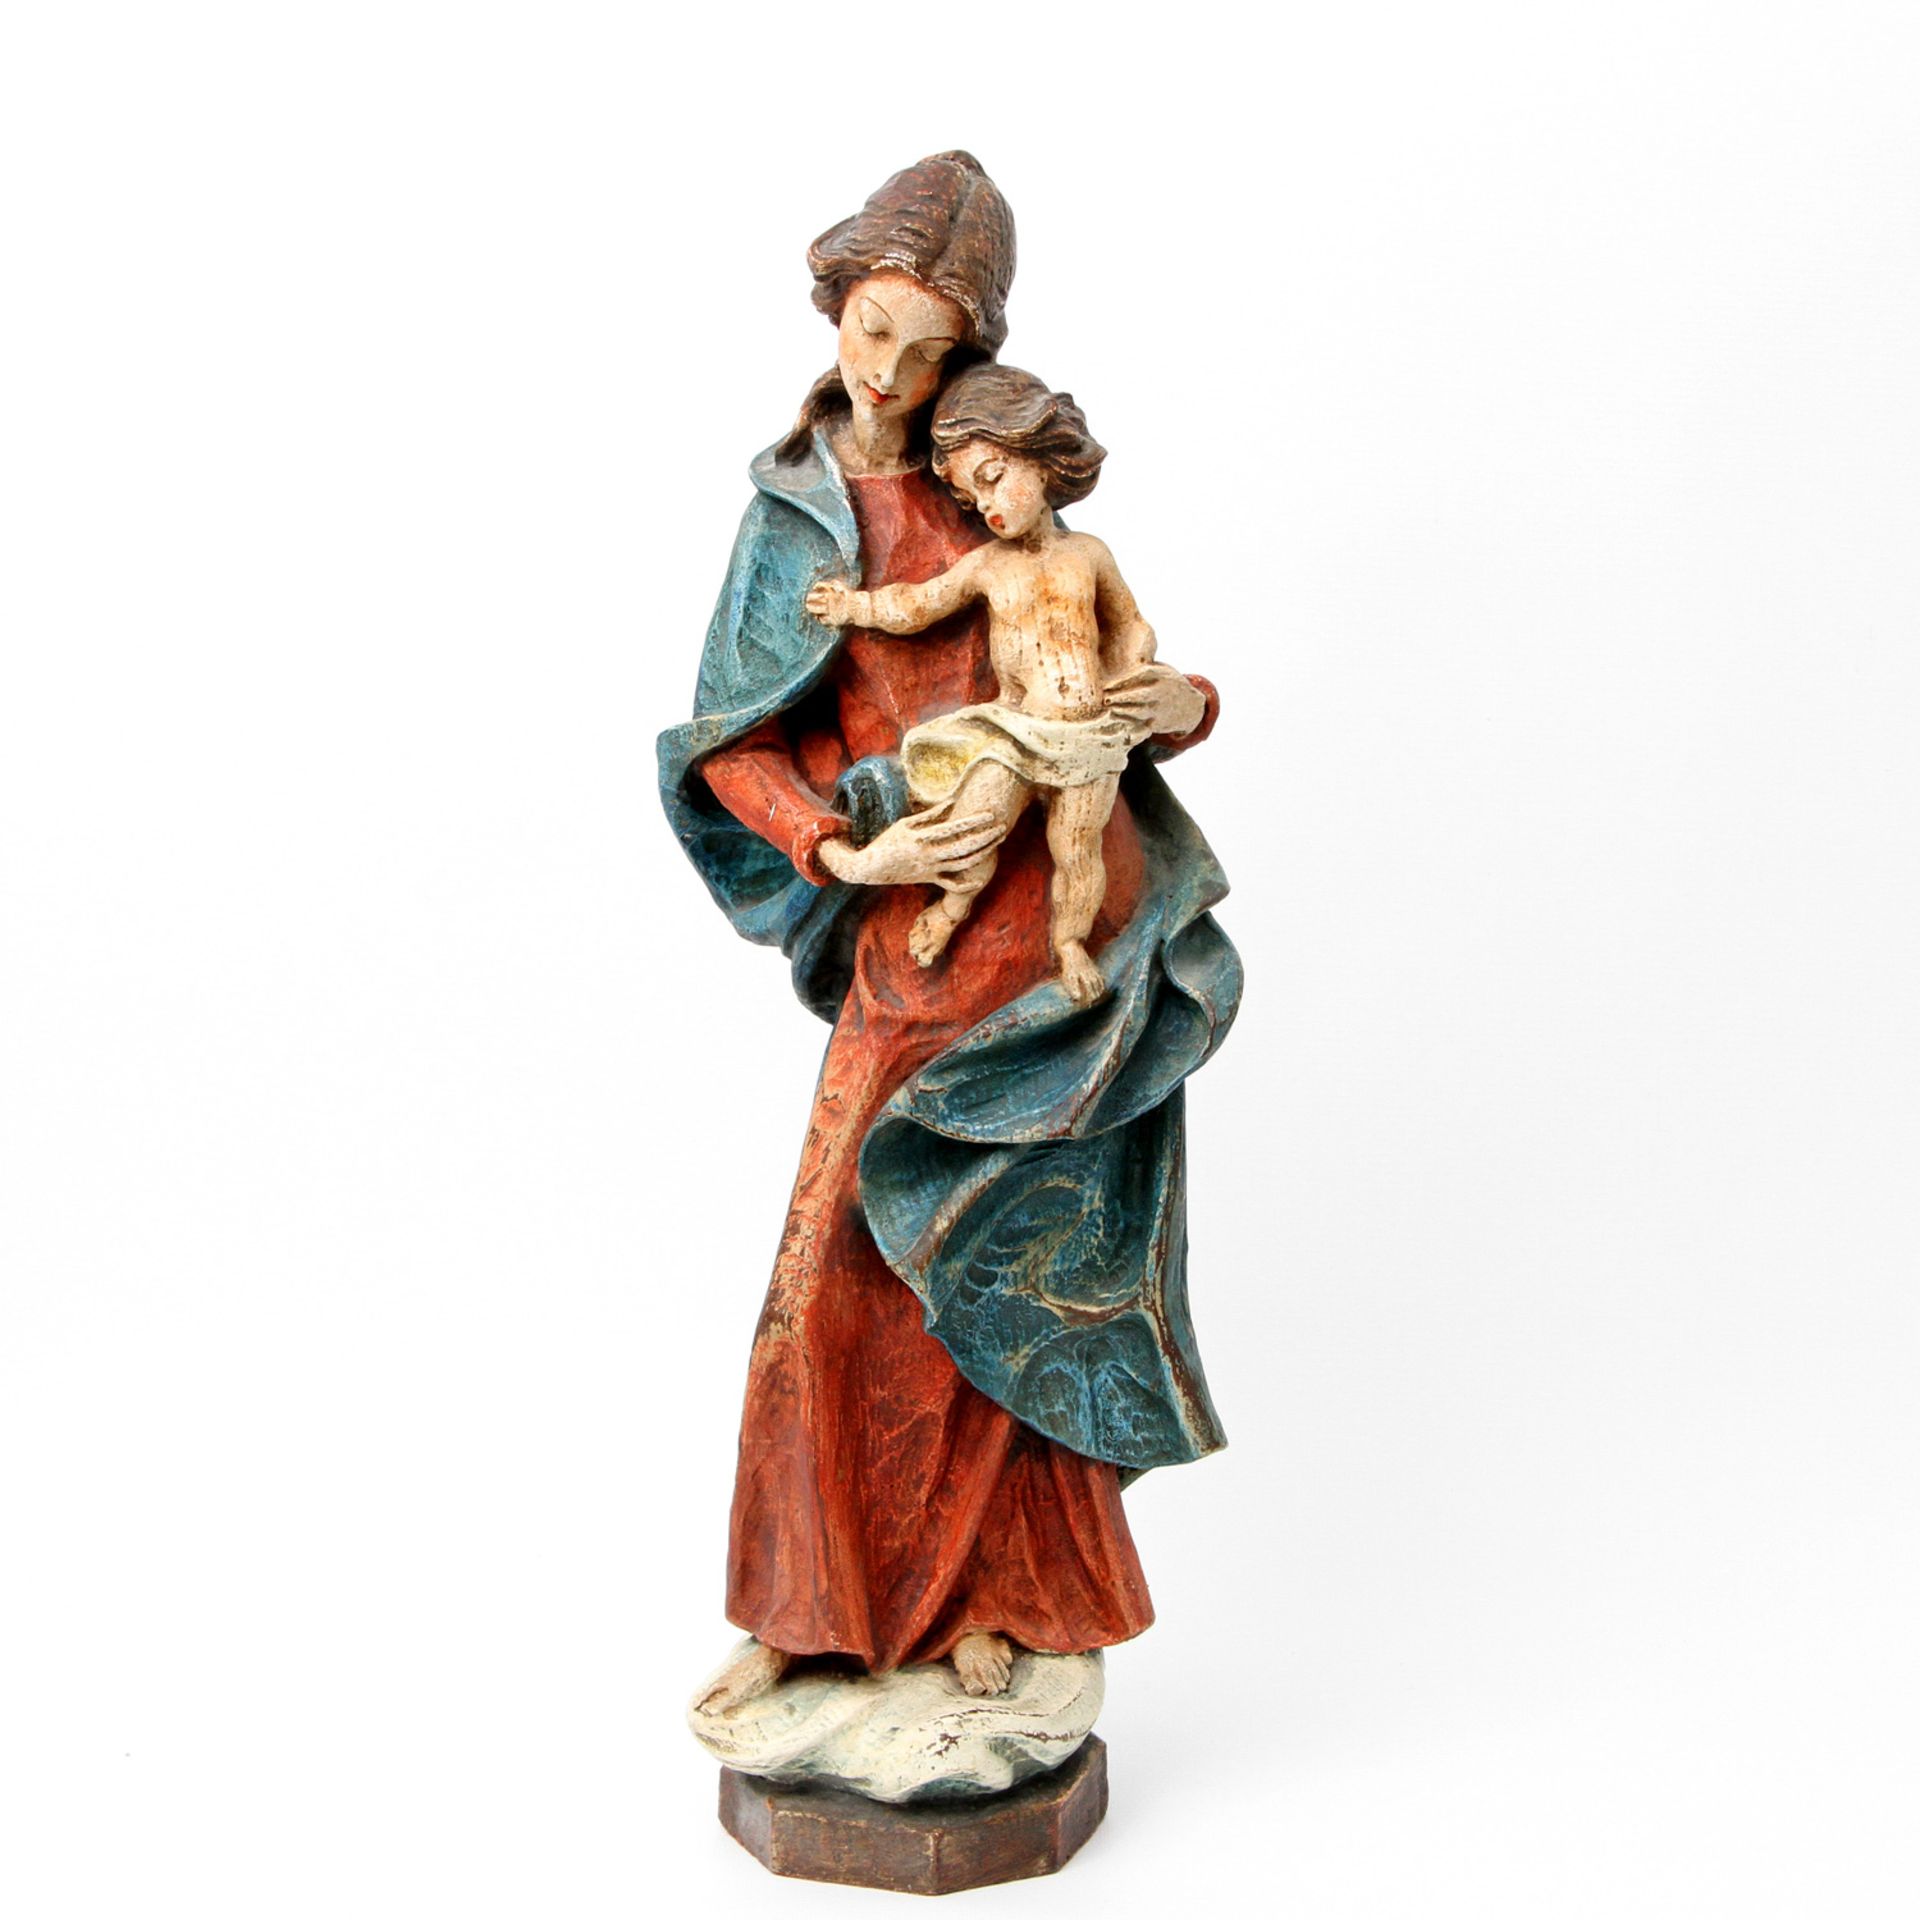 Liebreizende Figurengruppe Maria mit Kind, 20. Jh. Stehende Muttergottes mit Kind auf Sockel, farbig